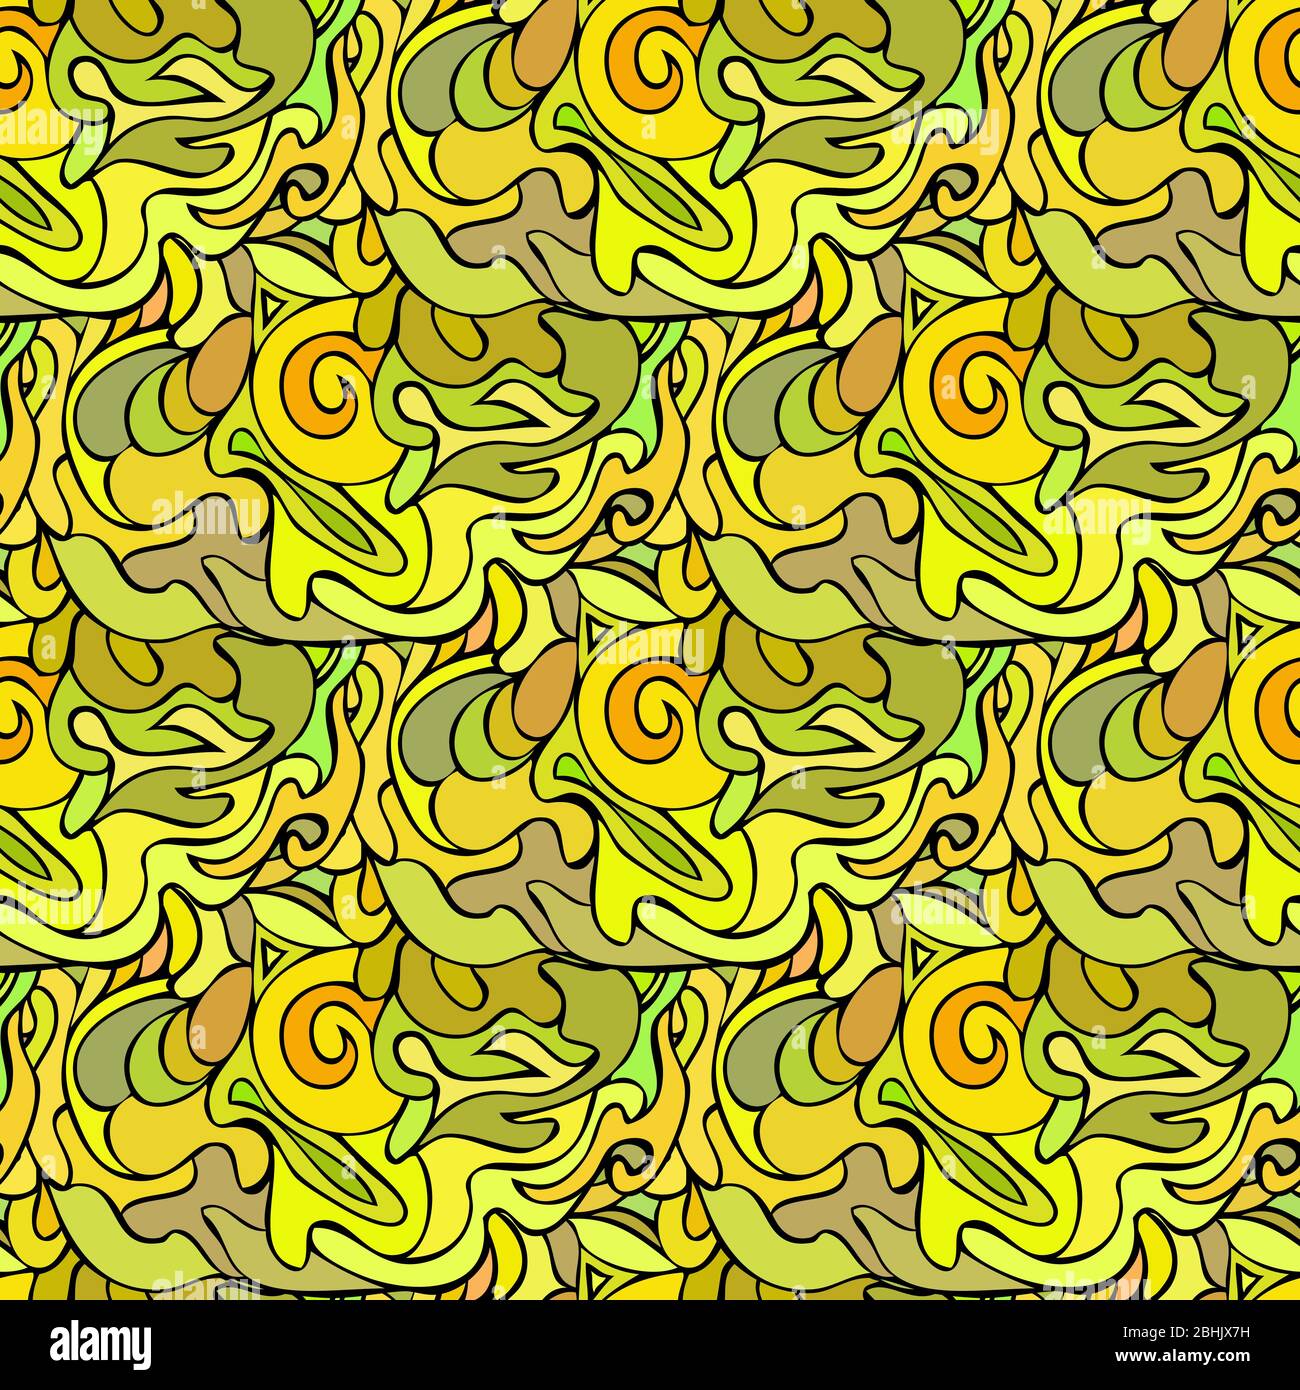 Abstrakt gelbes florales Nahtmuster Stock Vektor